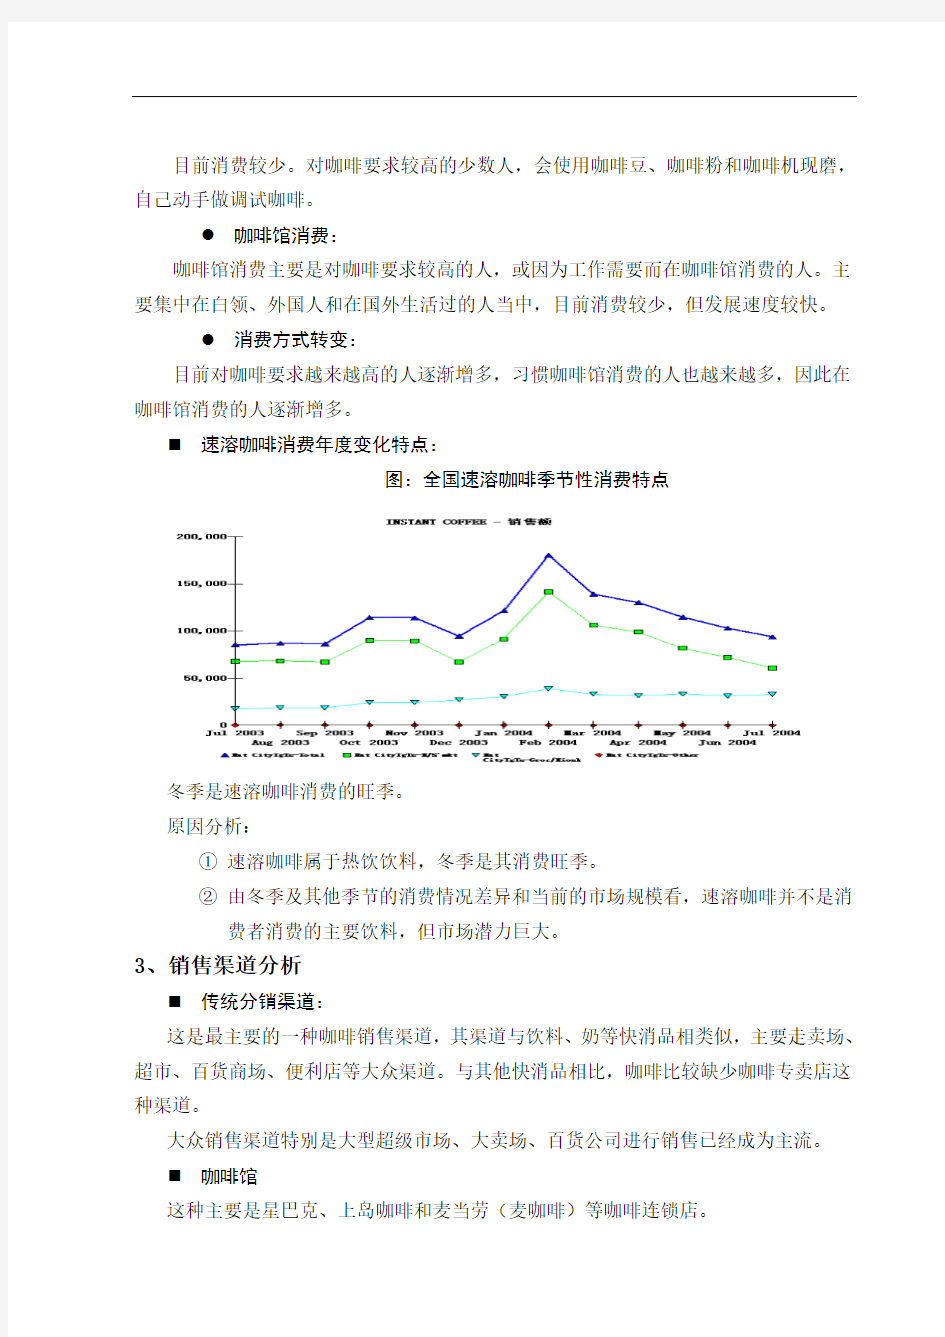 中国咖啡市场分析(2012年分析)